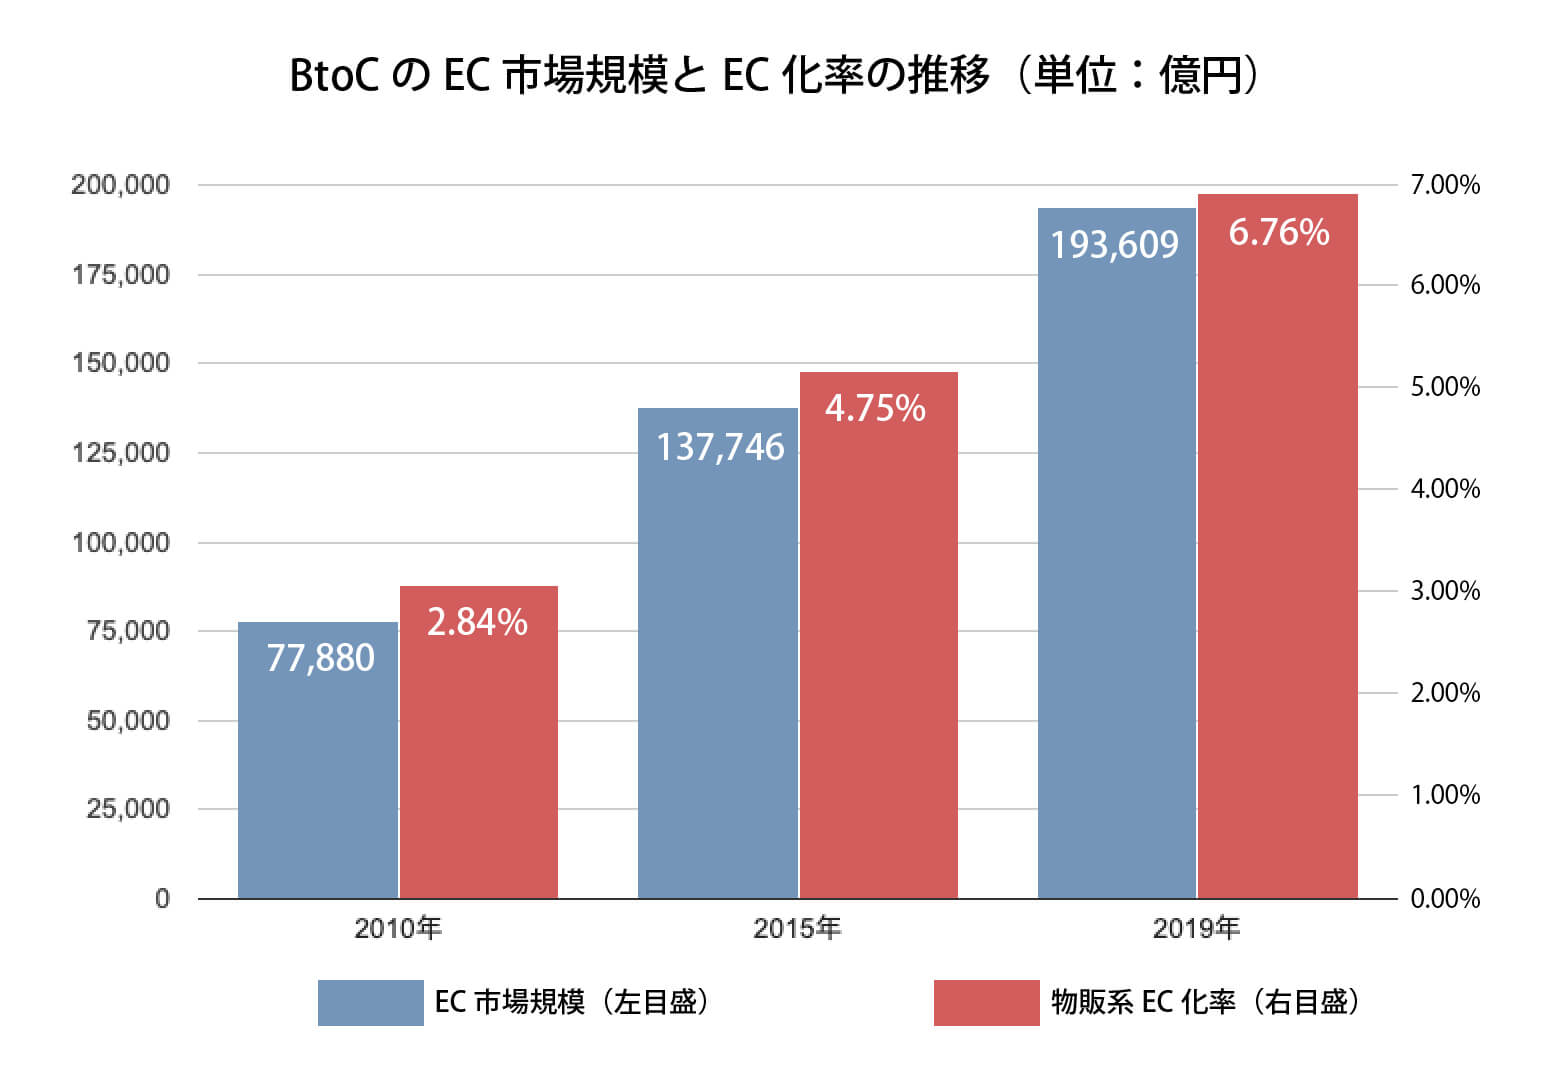 日本国内のBtoCのEC化率